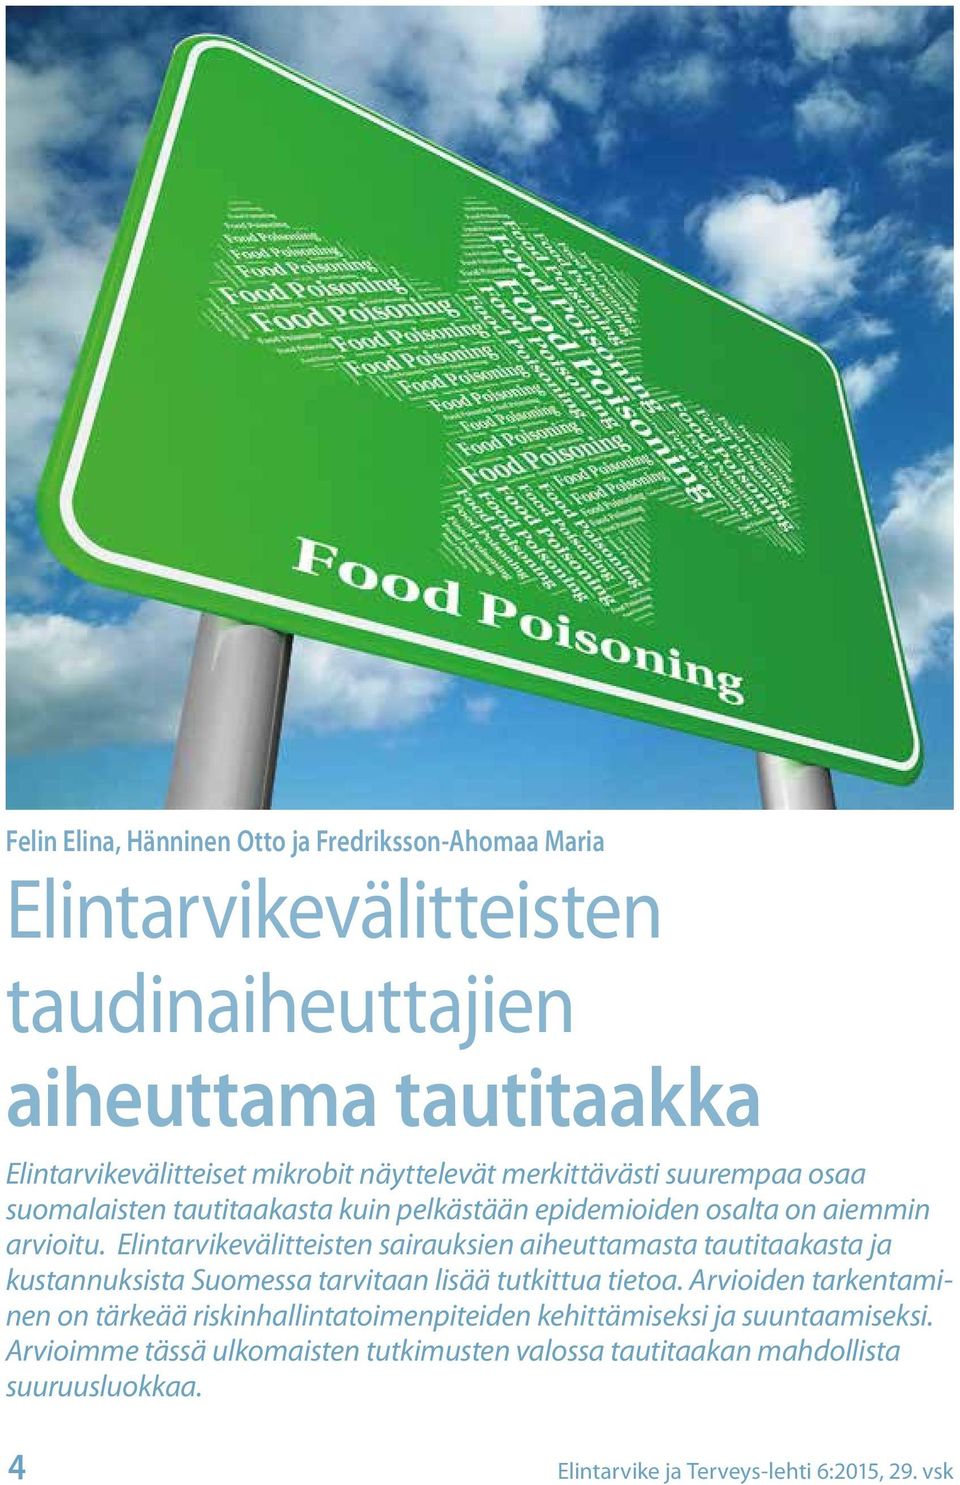 Elintarvikevälitteisten sairauksien aiheuttamasta tautitaakasta ja kustannuksista Suomessa tarvitaan lisää tutkittua tietoa.